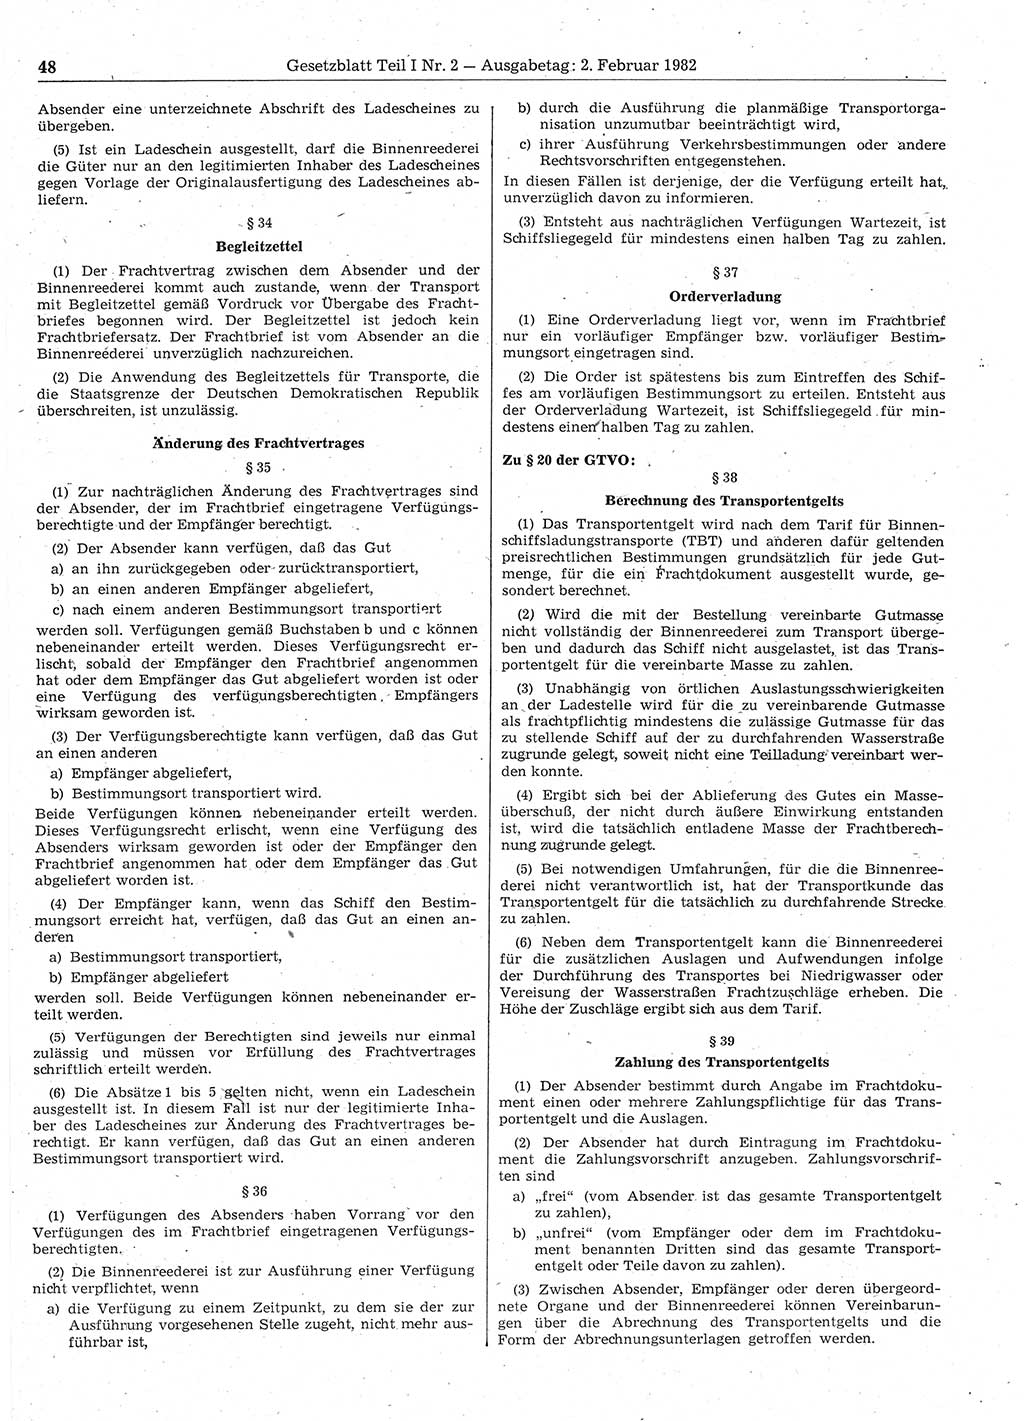 Gesetzblatt (GBl.) der Deutschen Demokratischen Republik (DDR) Teil Ⅰ 1982, Seite 48 (GBl. DDR Ⅰ 1982, S. 48)